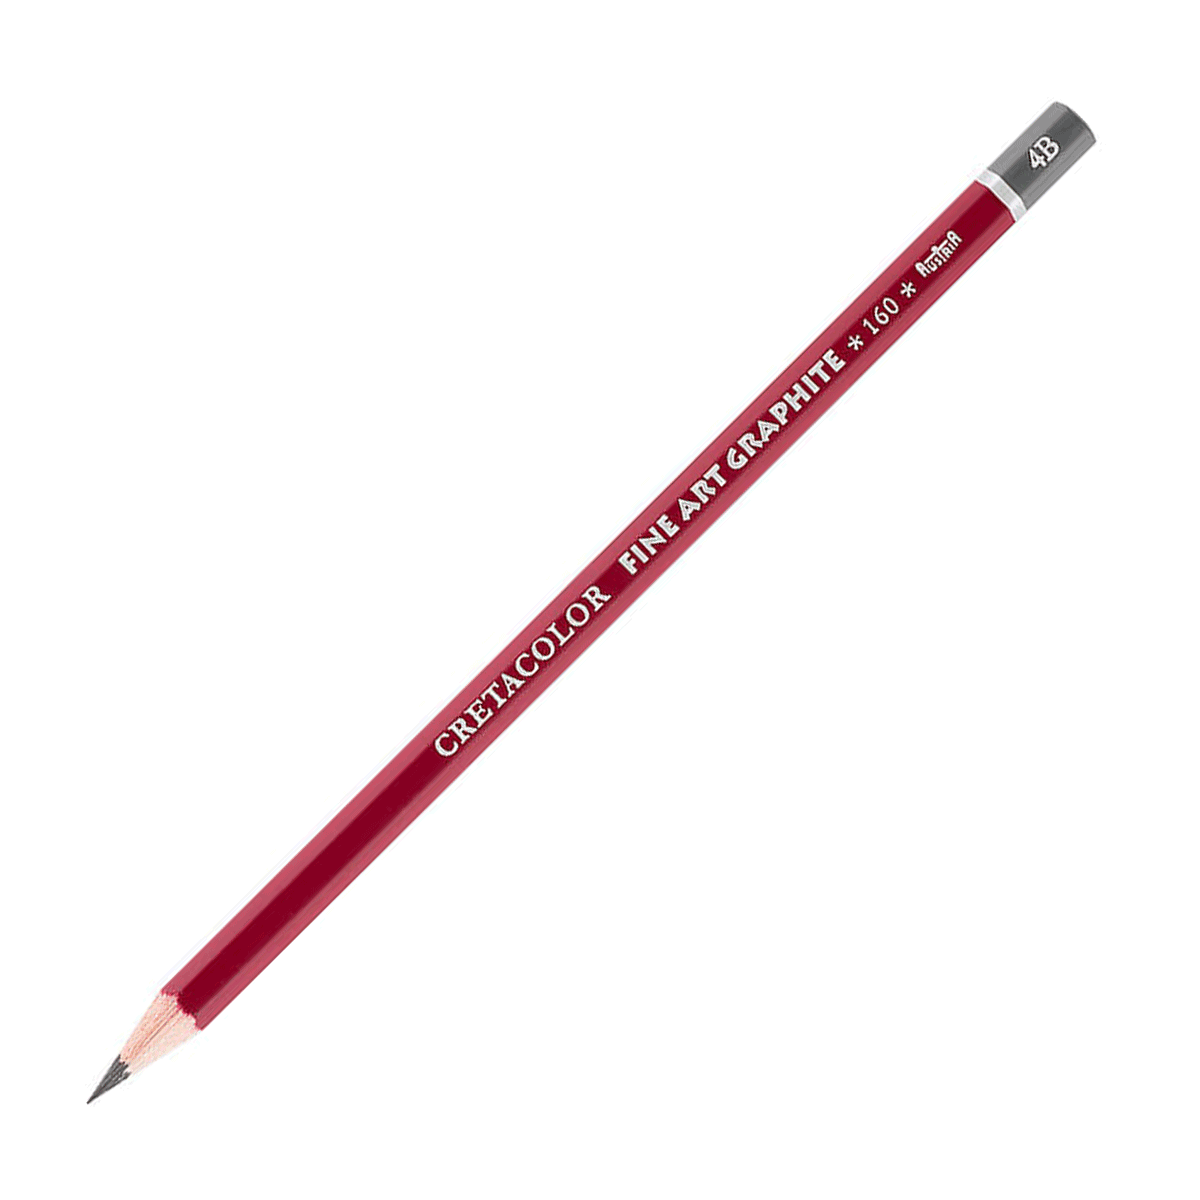 Cretacolor Fine Art Red Graphite Pencil - 4B